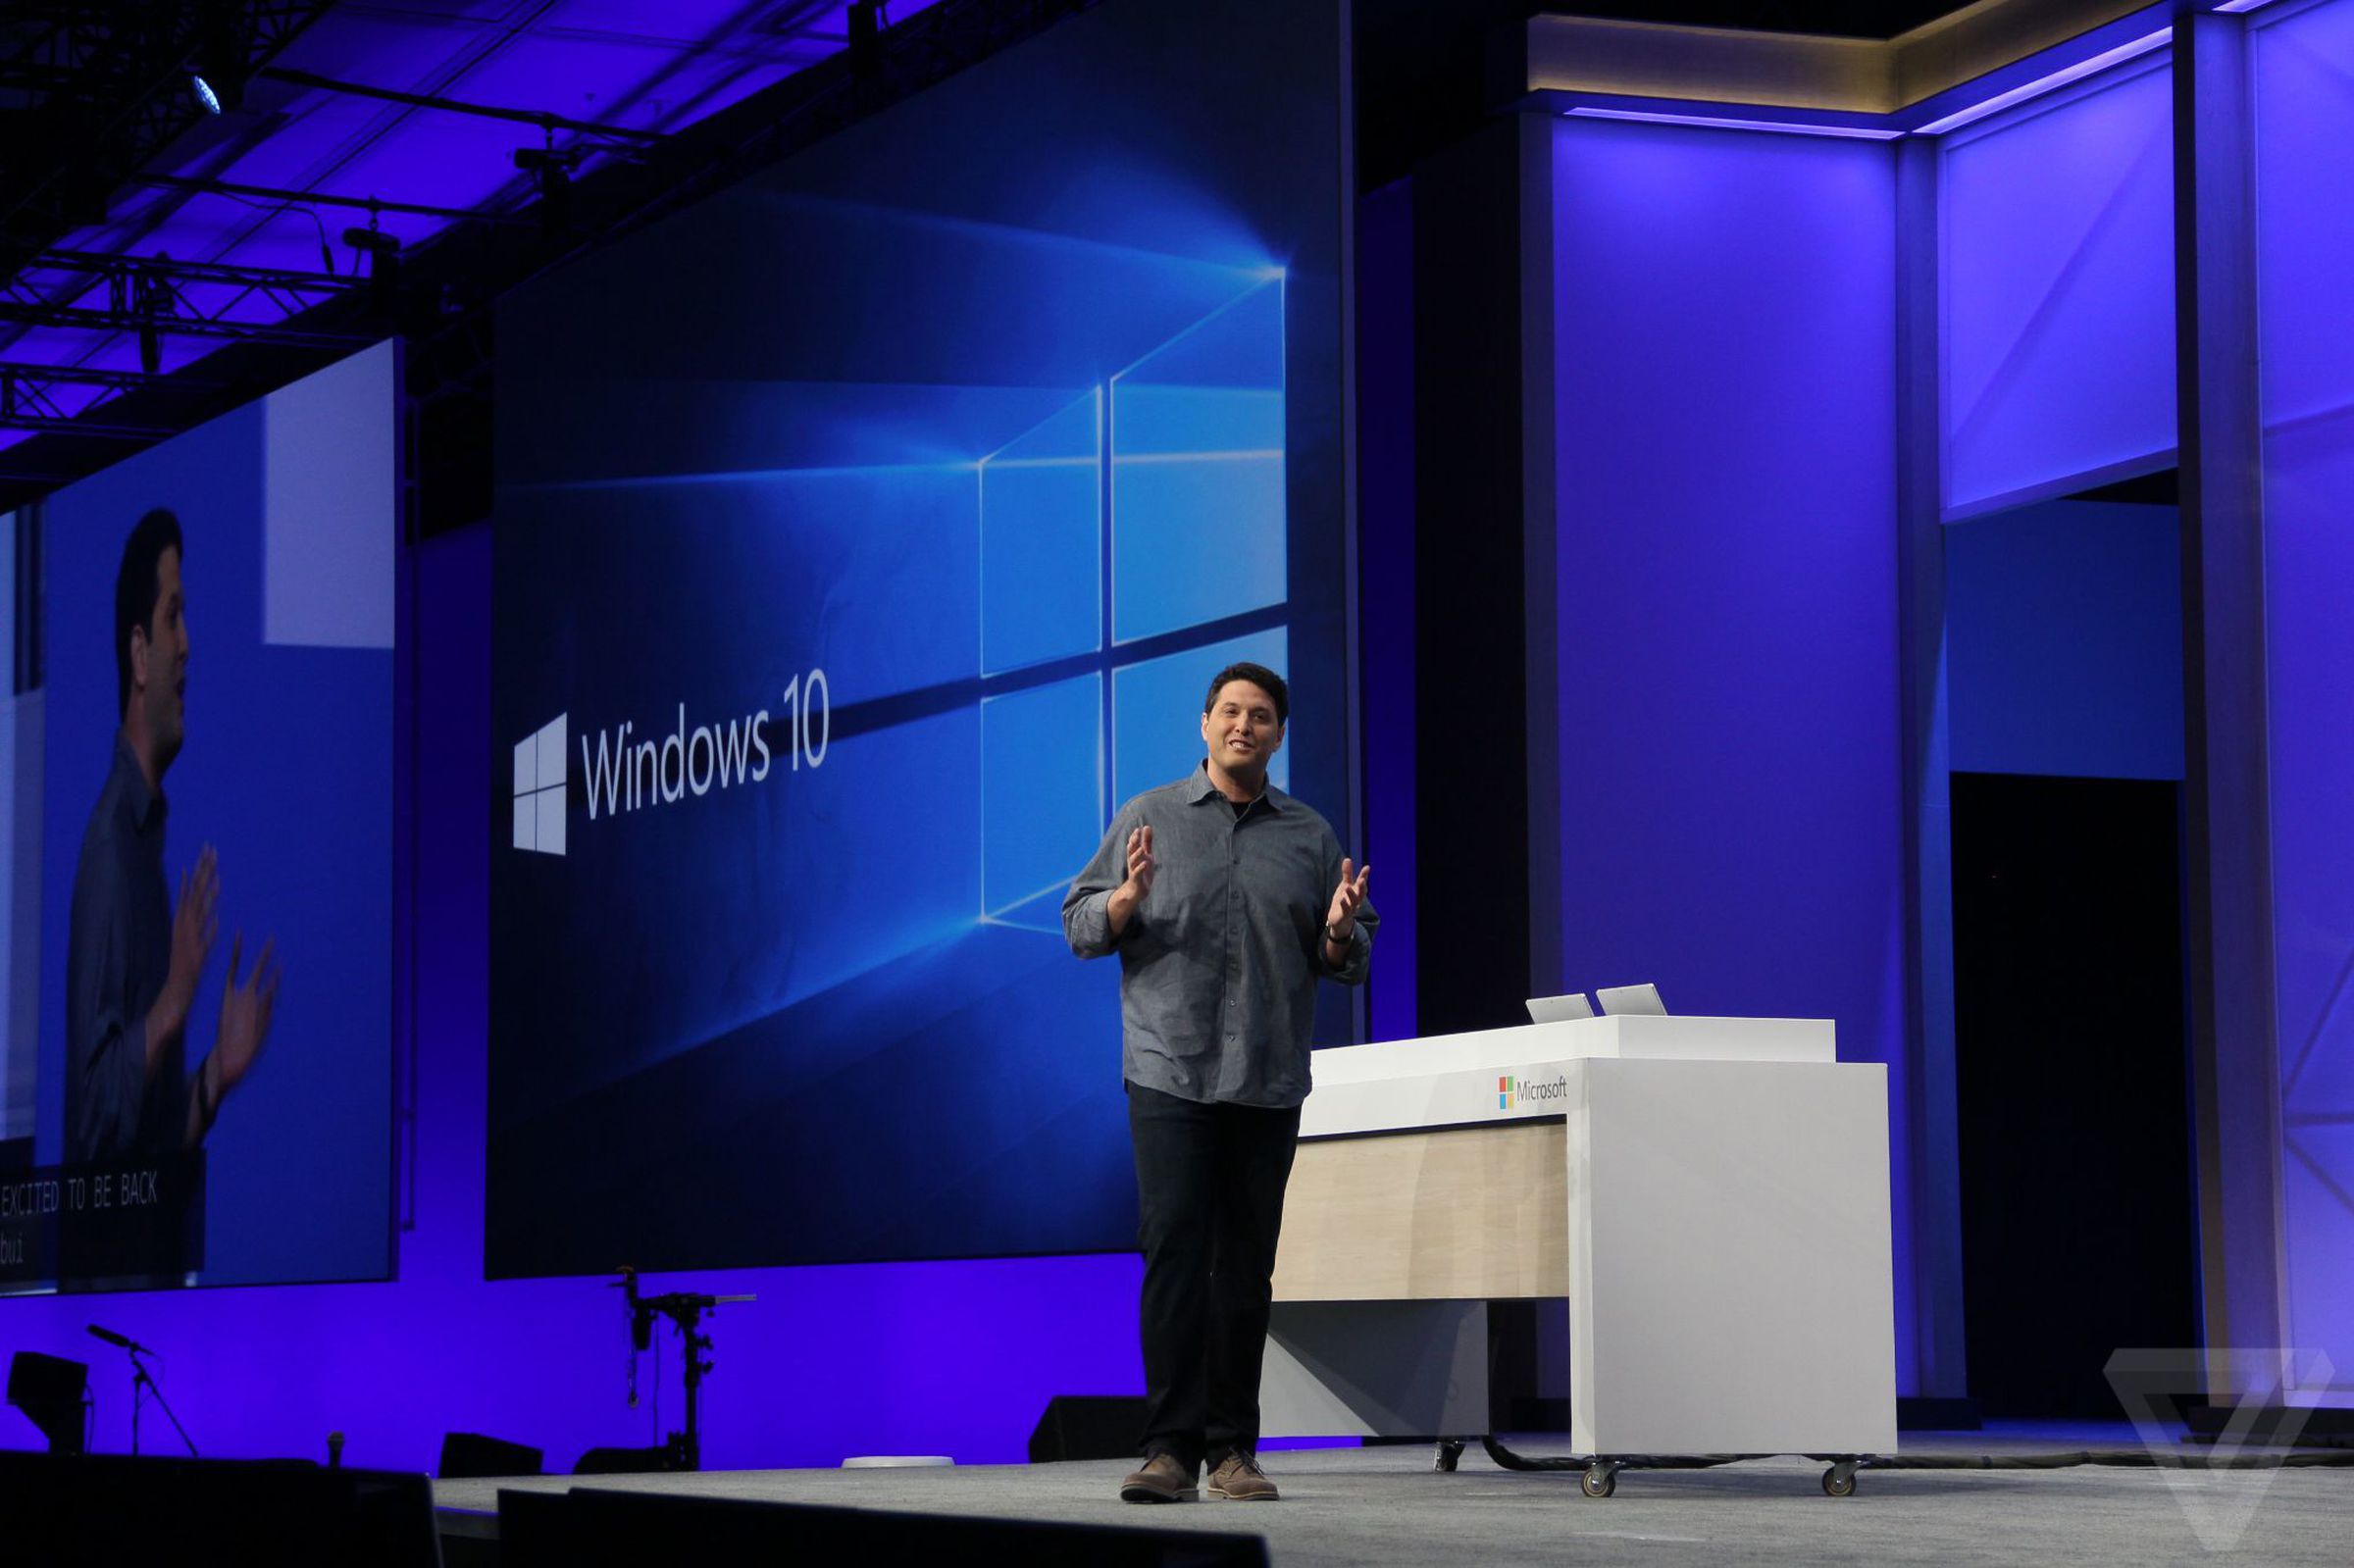 MS Build 2016: Windows 10 announcement photos